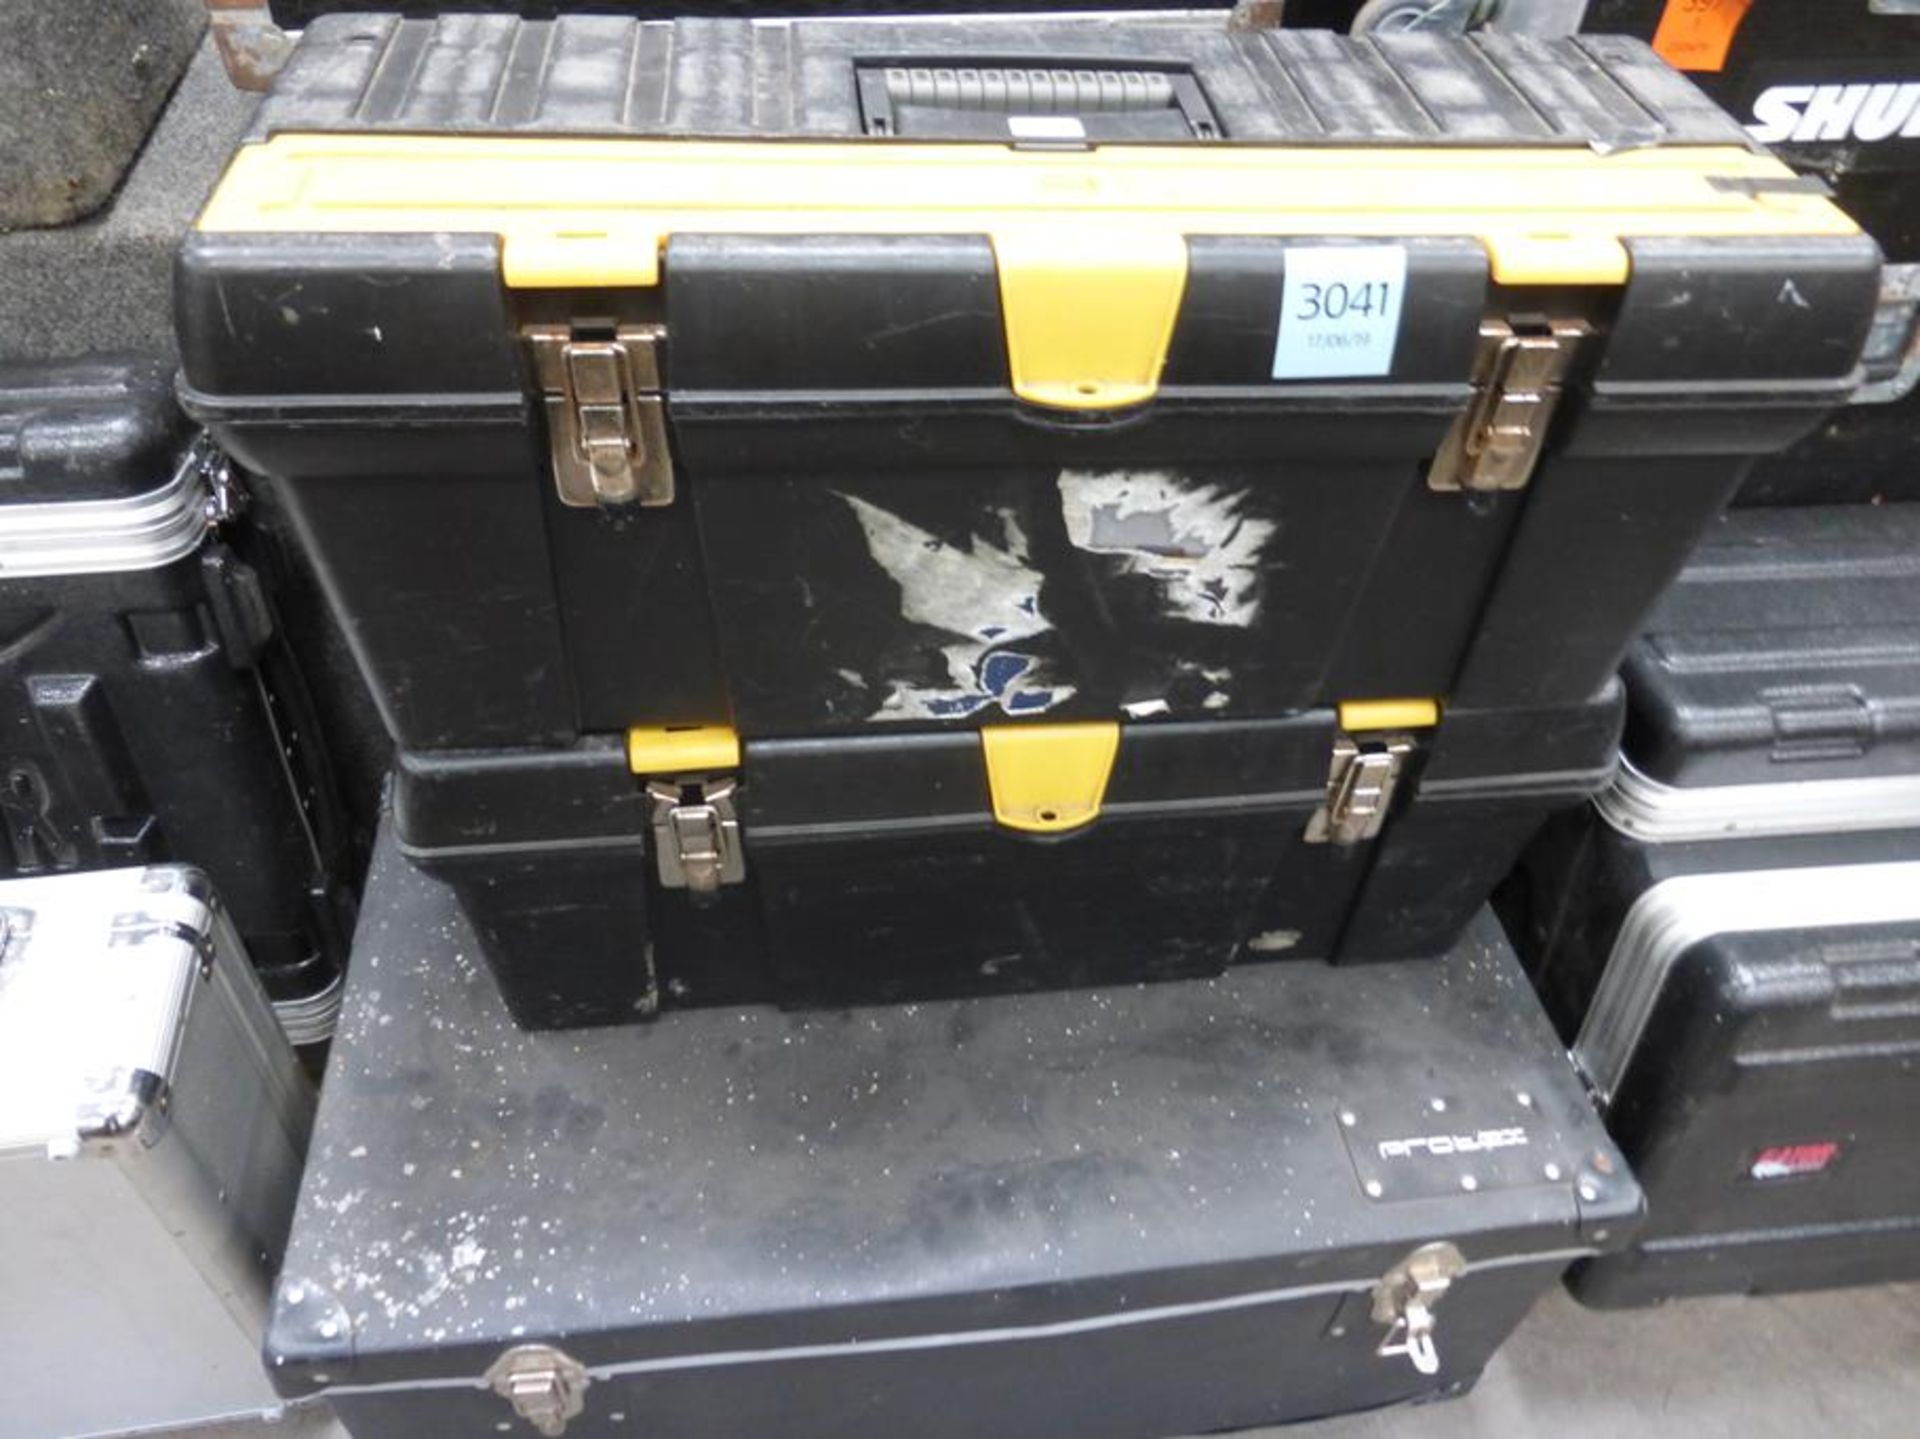 2 X Empty Tool Boxes, 5 X Empty Flight Cases - Image 2 of 2